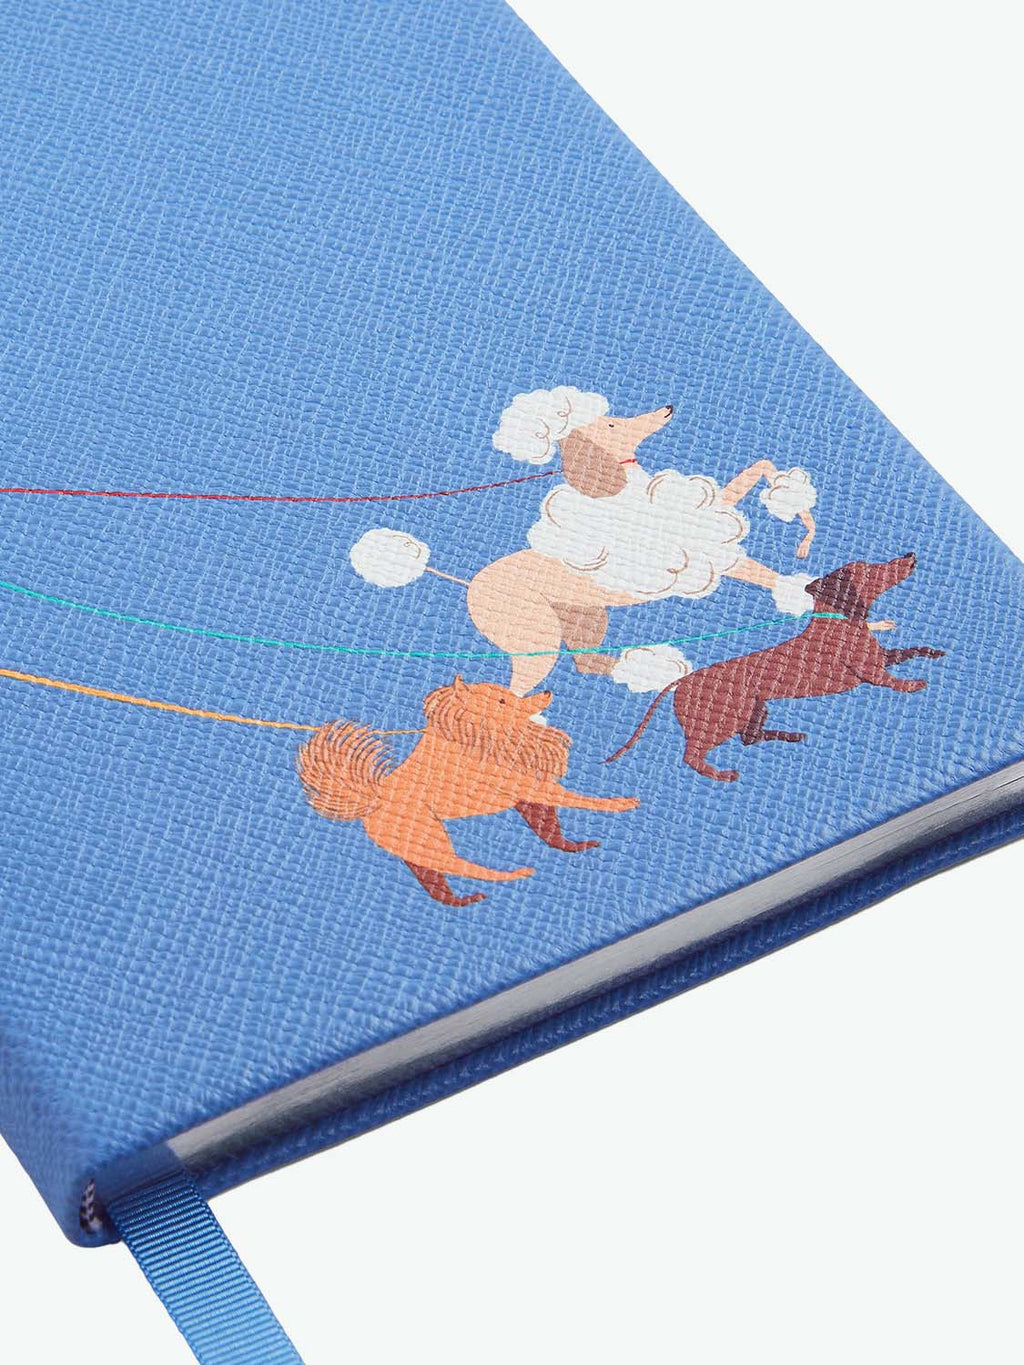 Smythson Dogs Soho Notebook in Panama Nile Blue